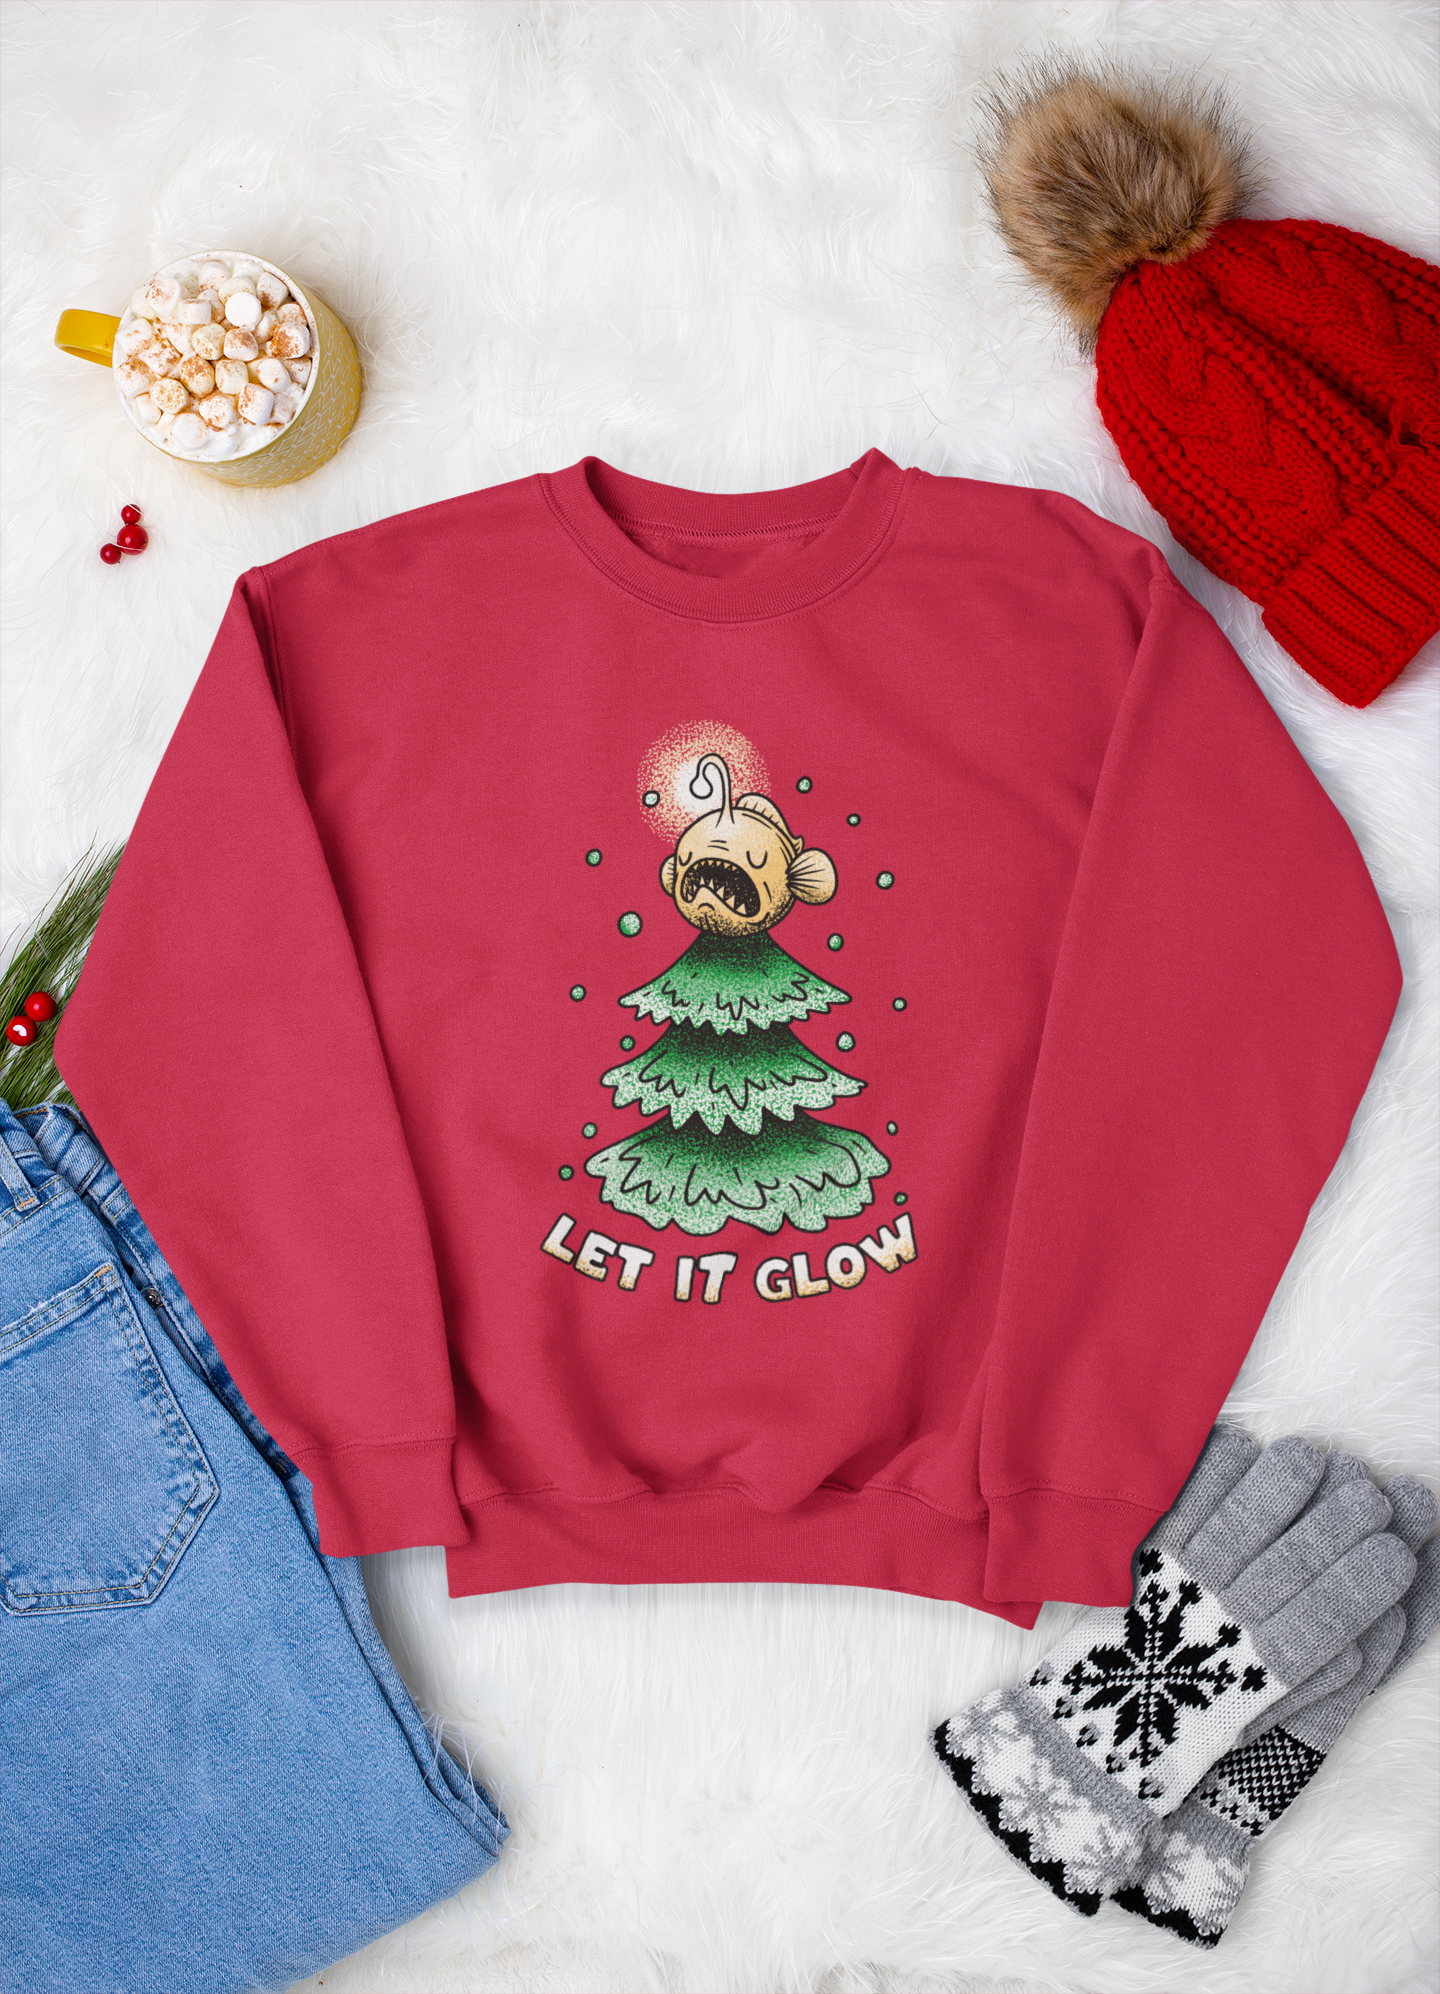 Let it glow - Cool Anglerfish Christmas Sweatshirt